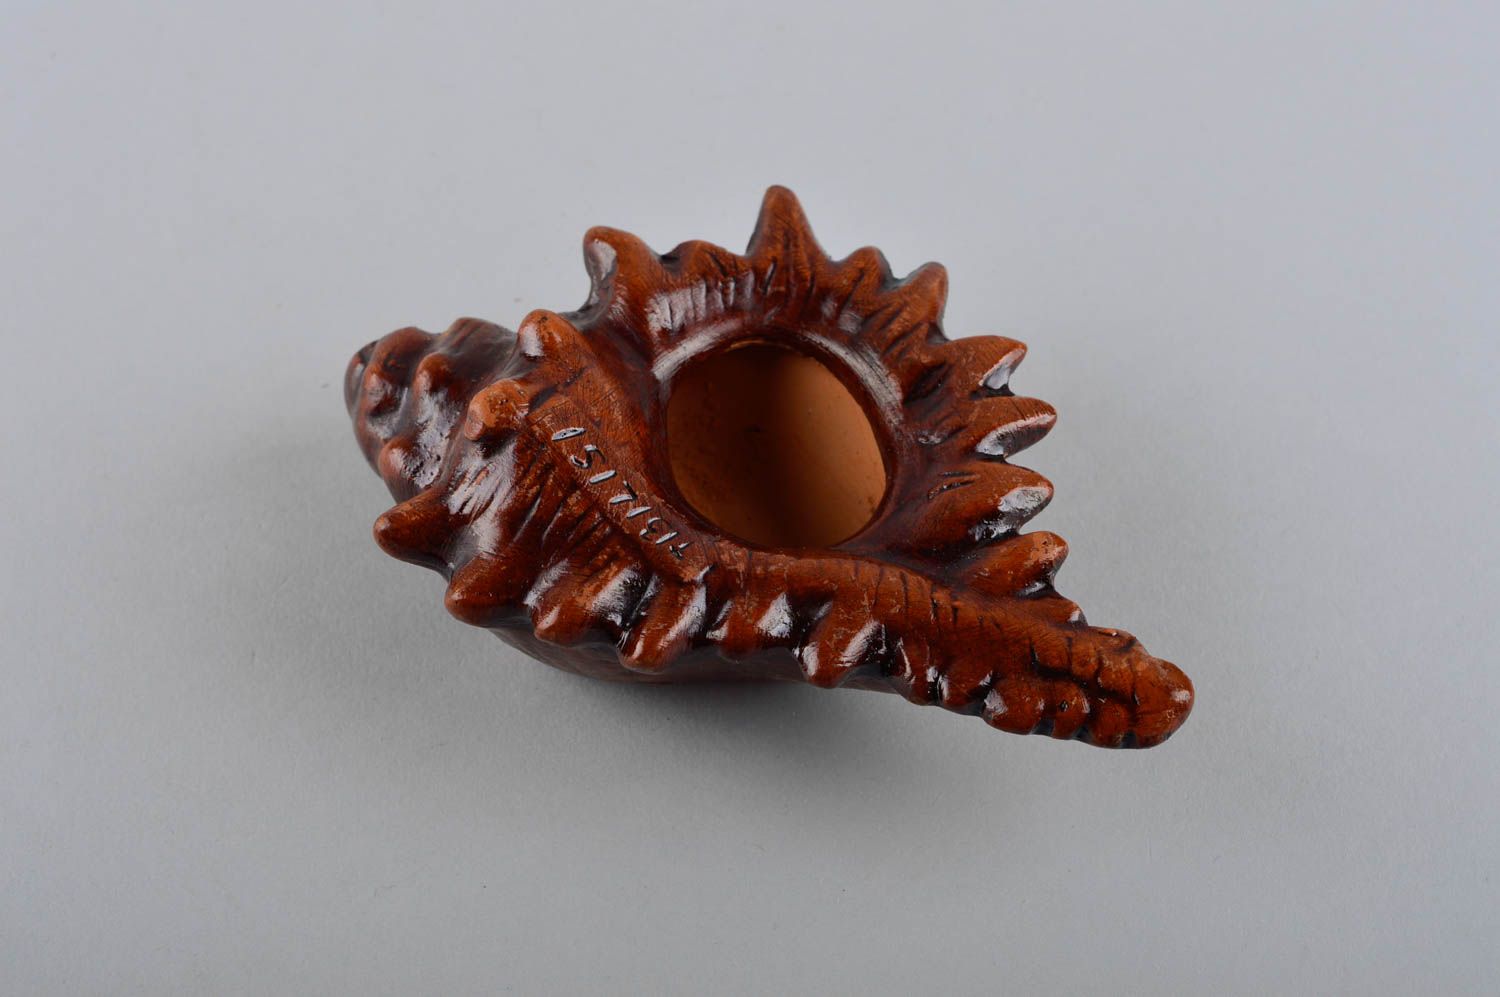 Handmade ashtray ceramic product gift for men clay ashtray decor ideas photo 5